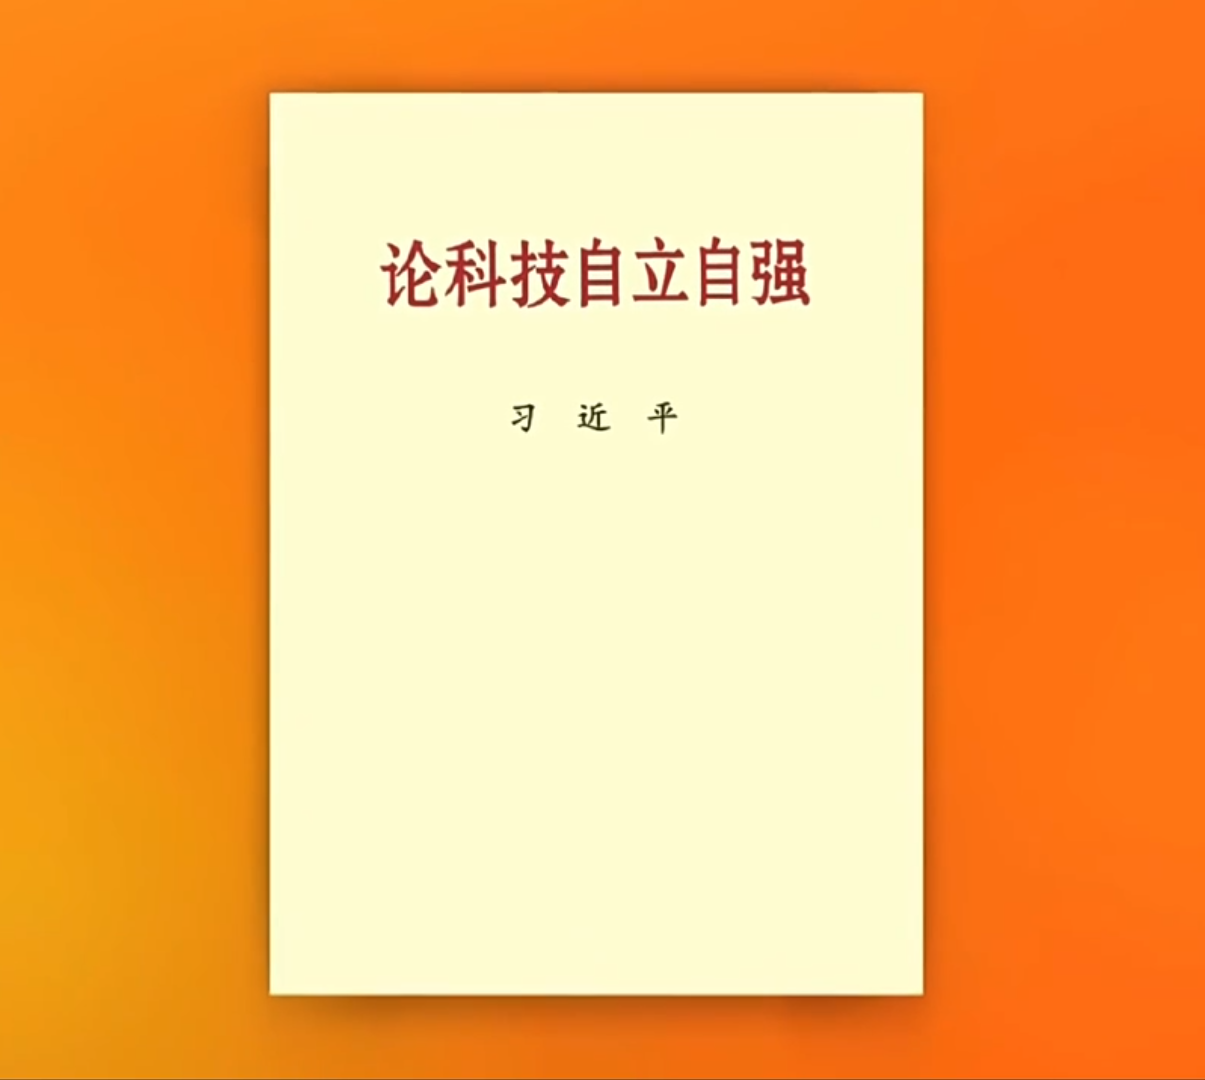 习近平同志《论科技自立自强》出版发行（含主要篇目介绍）